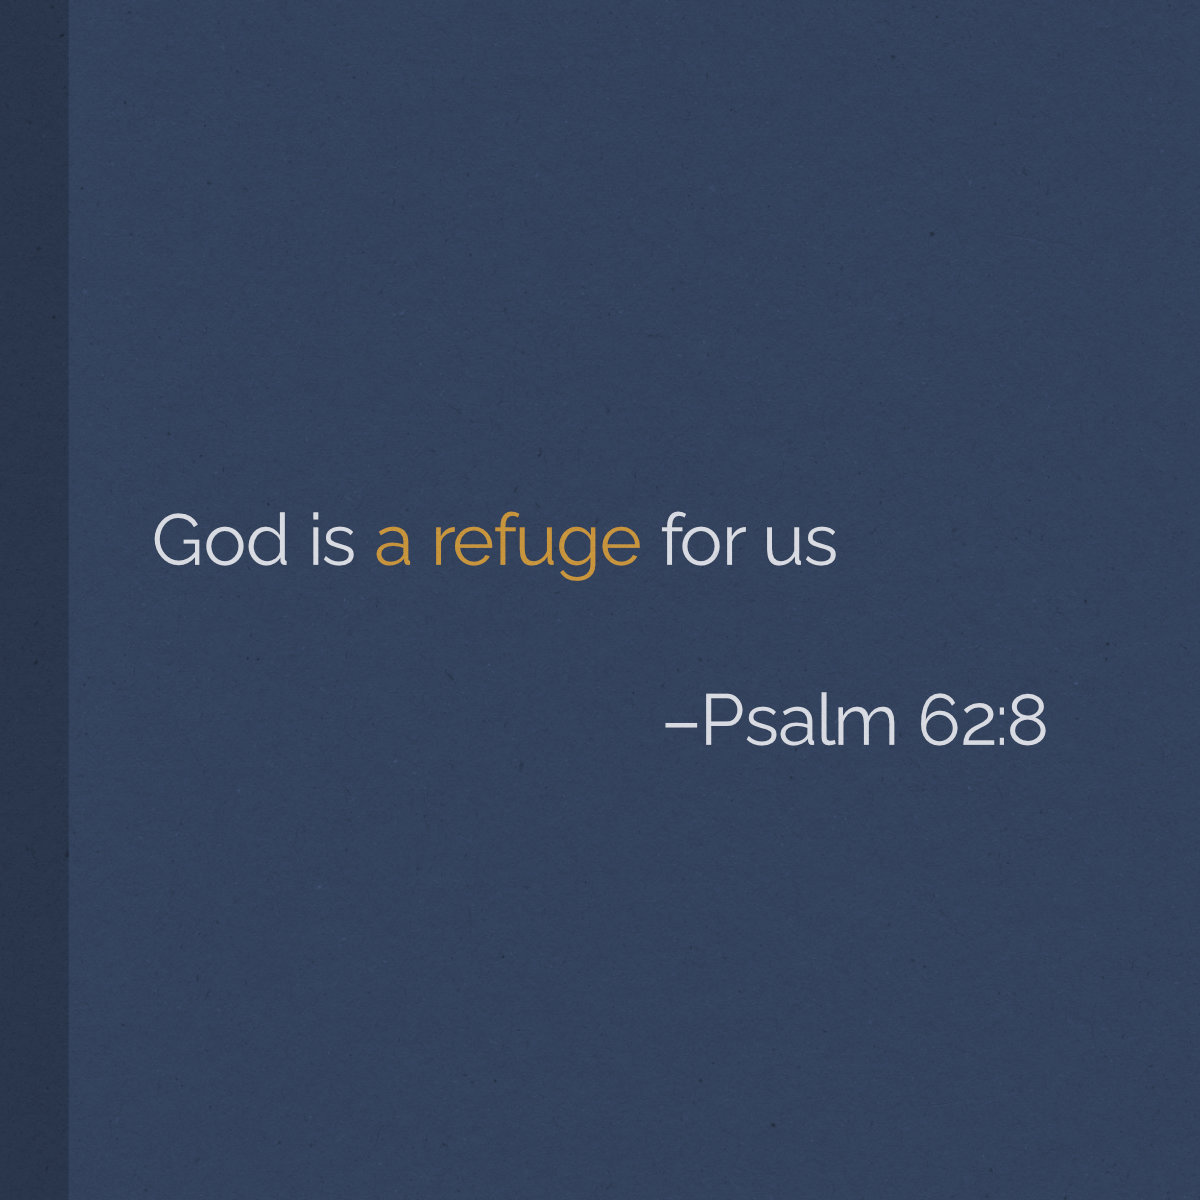 God is a refuge for us